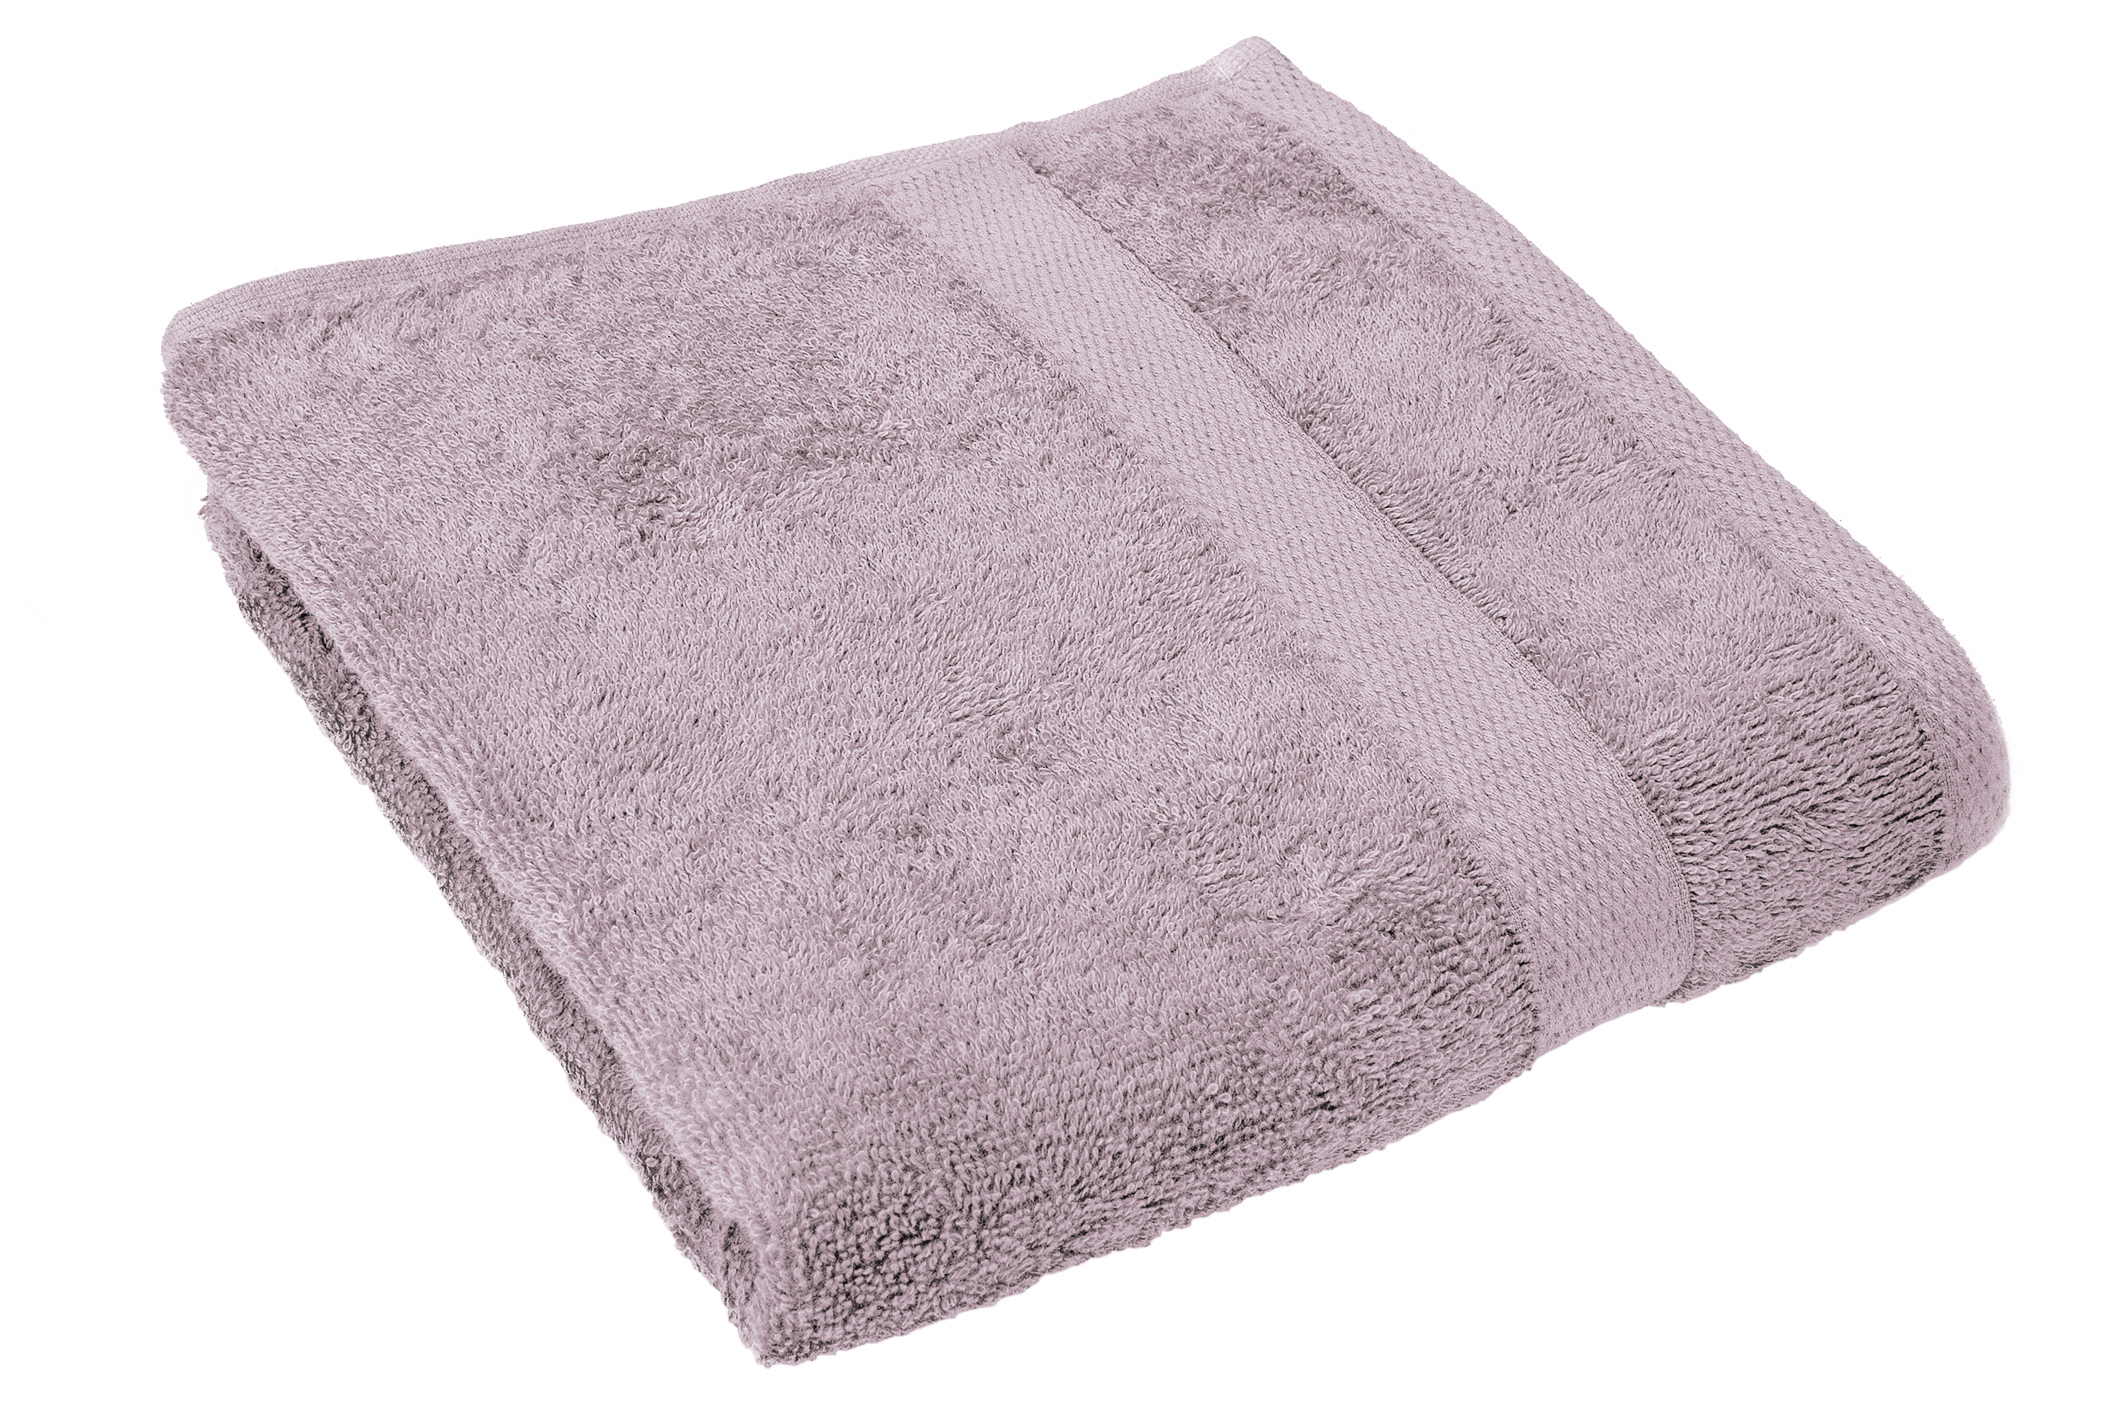 Bath towel 50x100cm, lilac